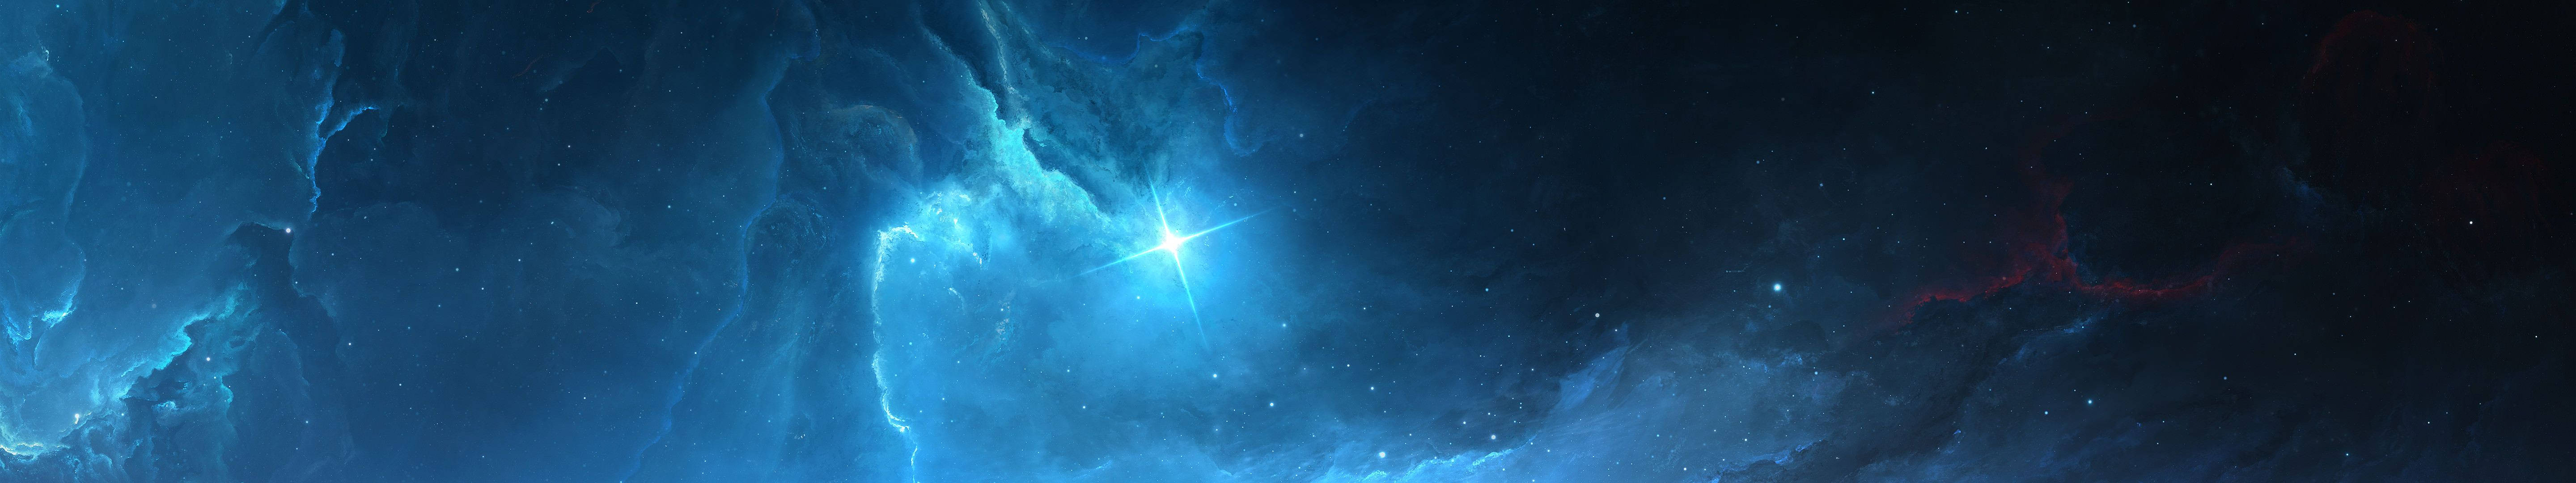 Twinkling Star In Blue Galaxy Wallpaper